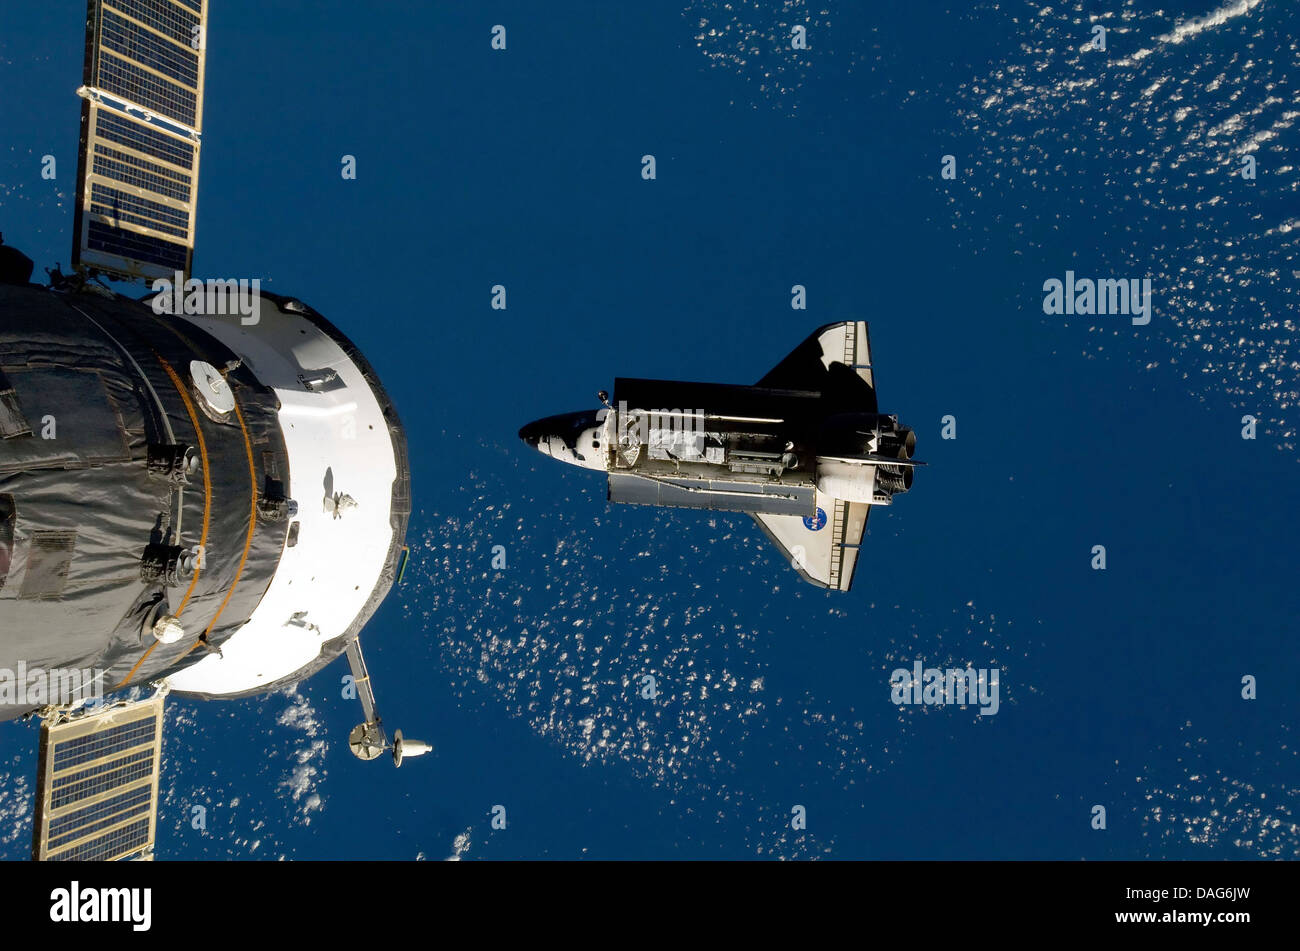 Estación espacial internacional y el transbordador espacial. Versión mejorada y optimizada de la imagen original de la NASA Foto de stock